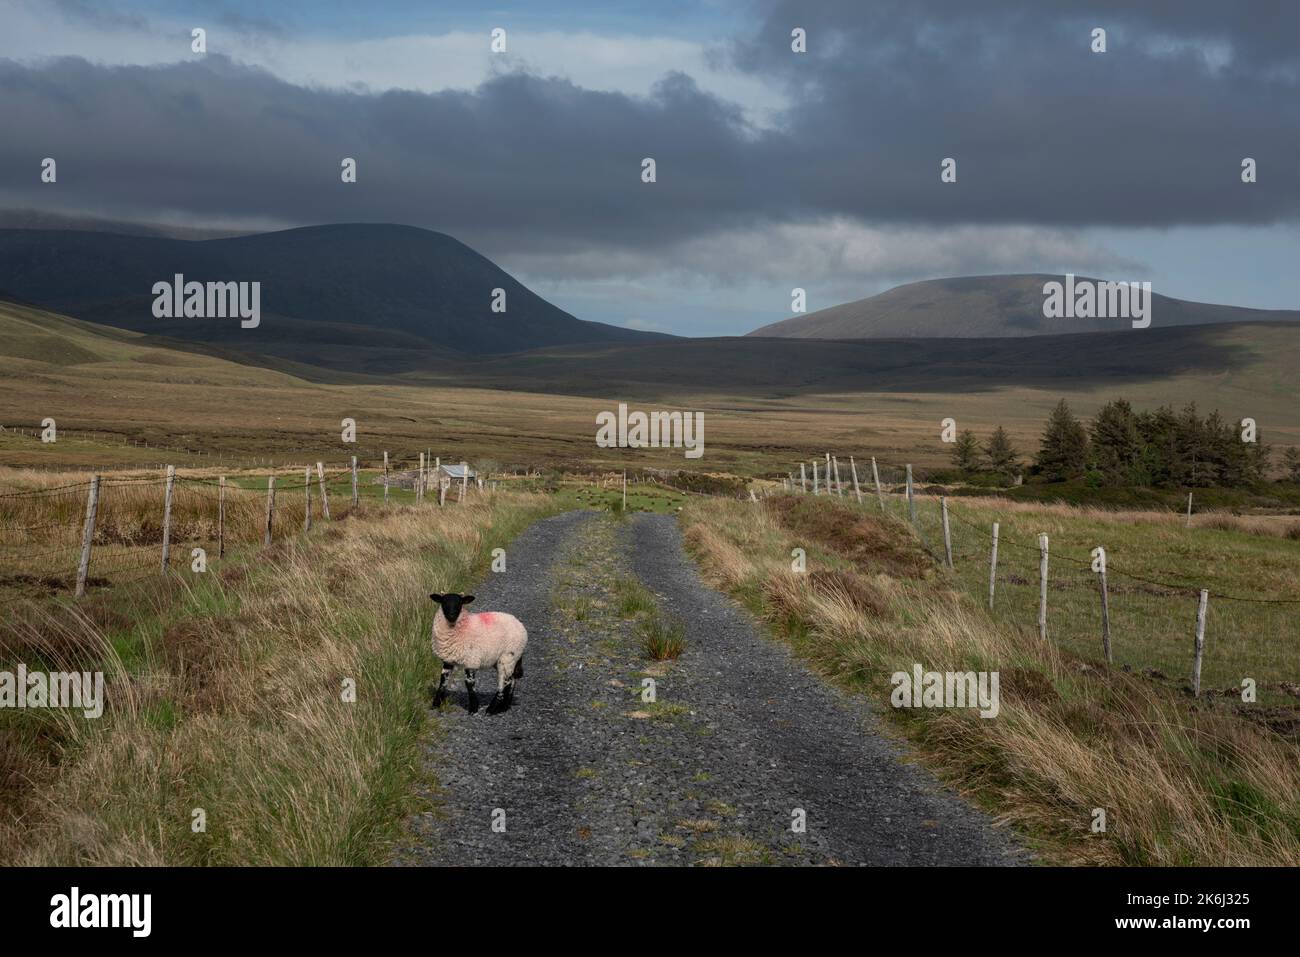 Schafe in einer eindrucksvollen Landschaft der weiten und abgelegenen Torfgebiete am Rande des Wild Nephin National Park, co Mayo, Irland. Stockfoto